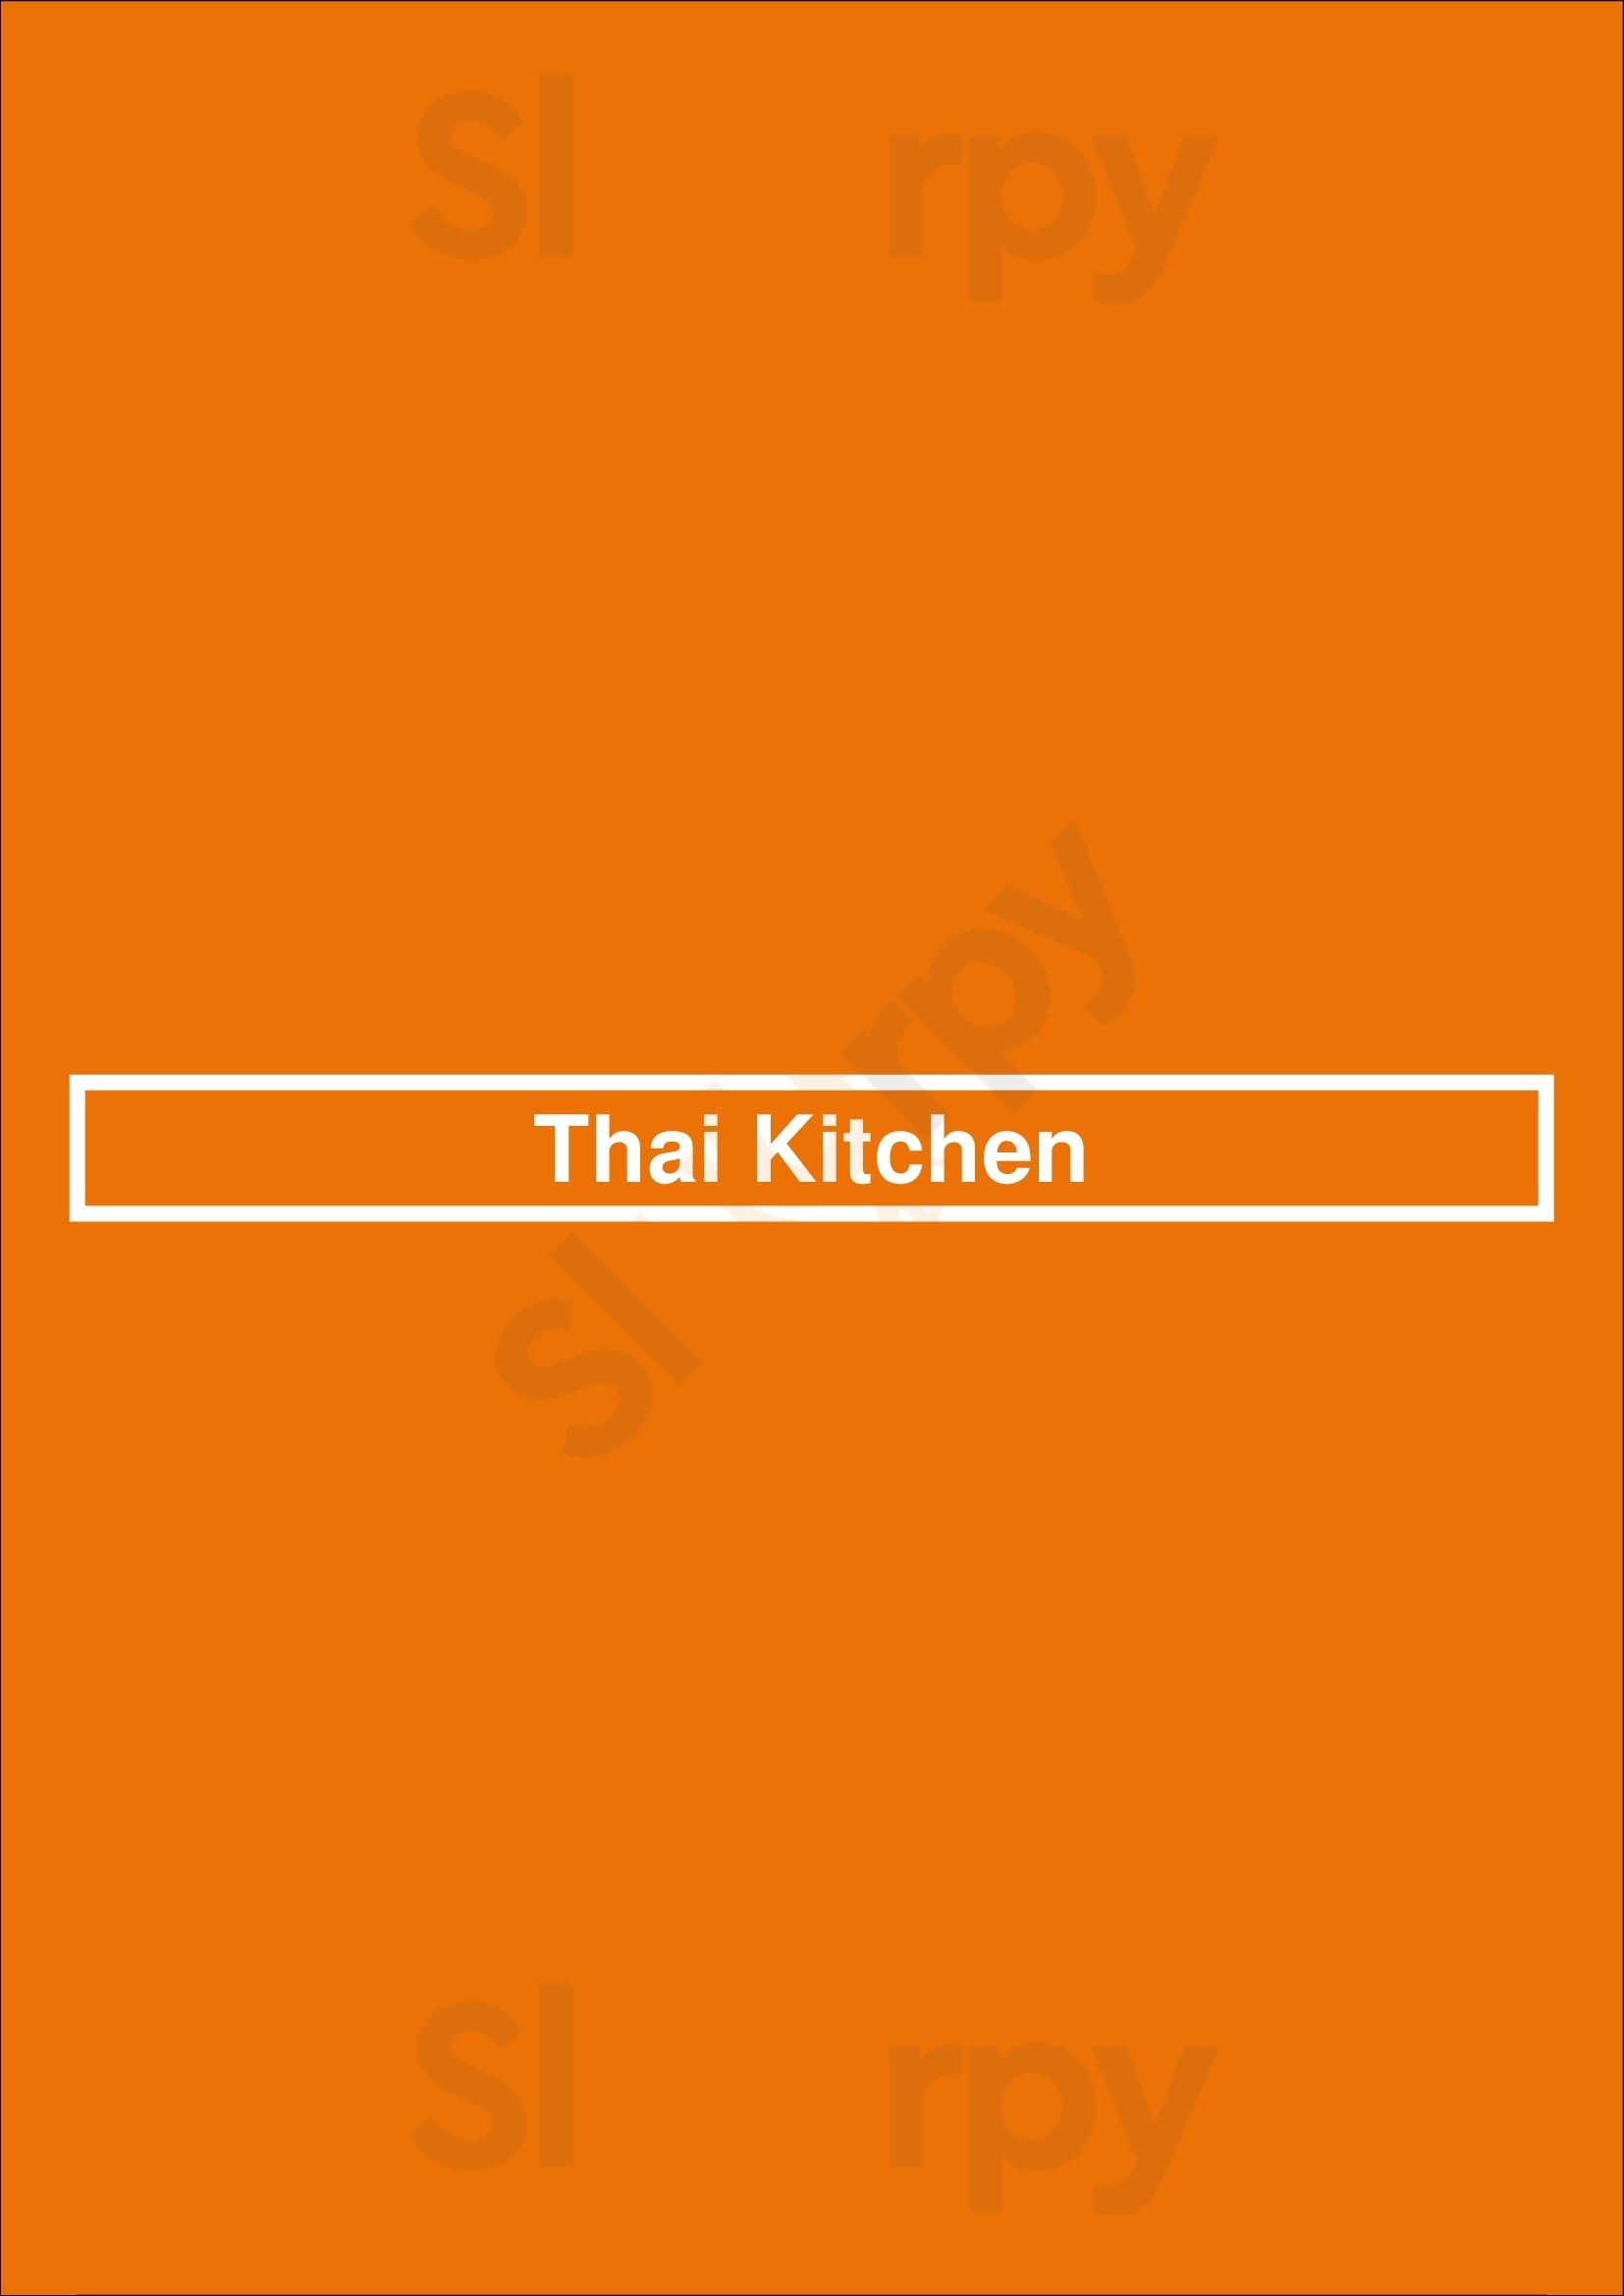 Thai Kitchen Den Haag Menu - 1